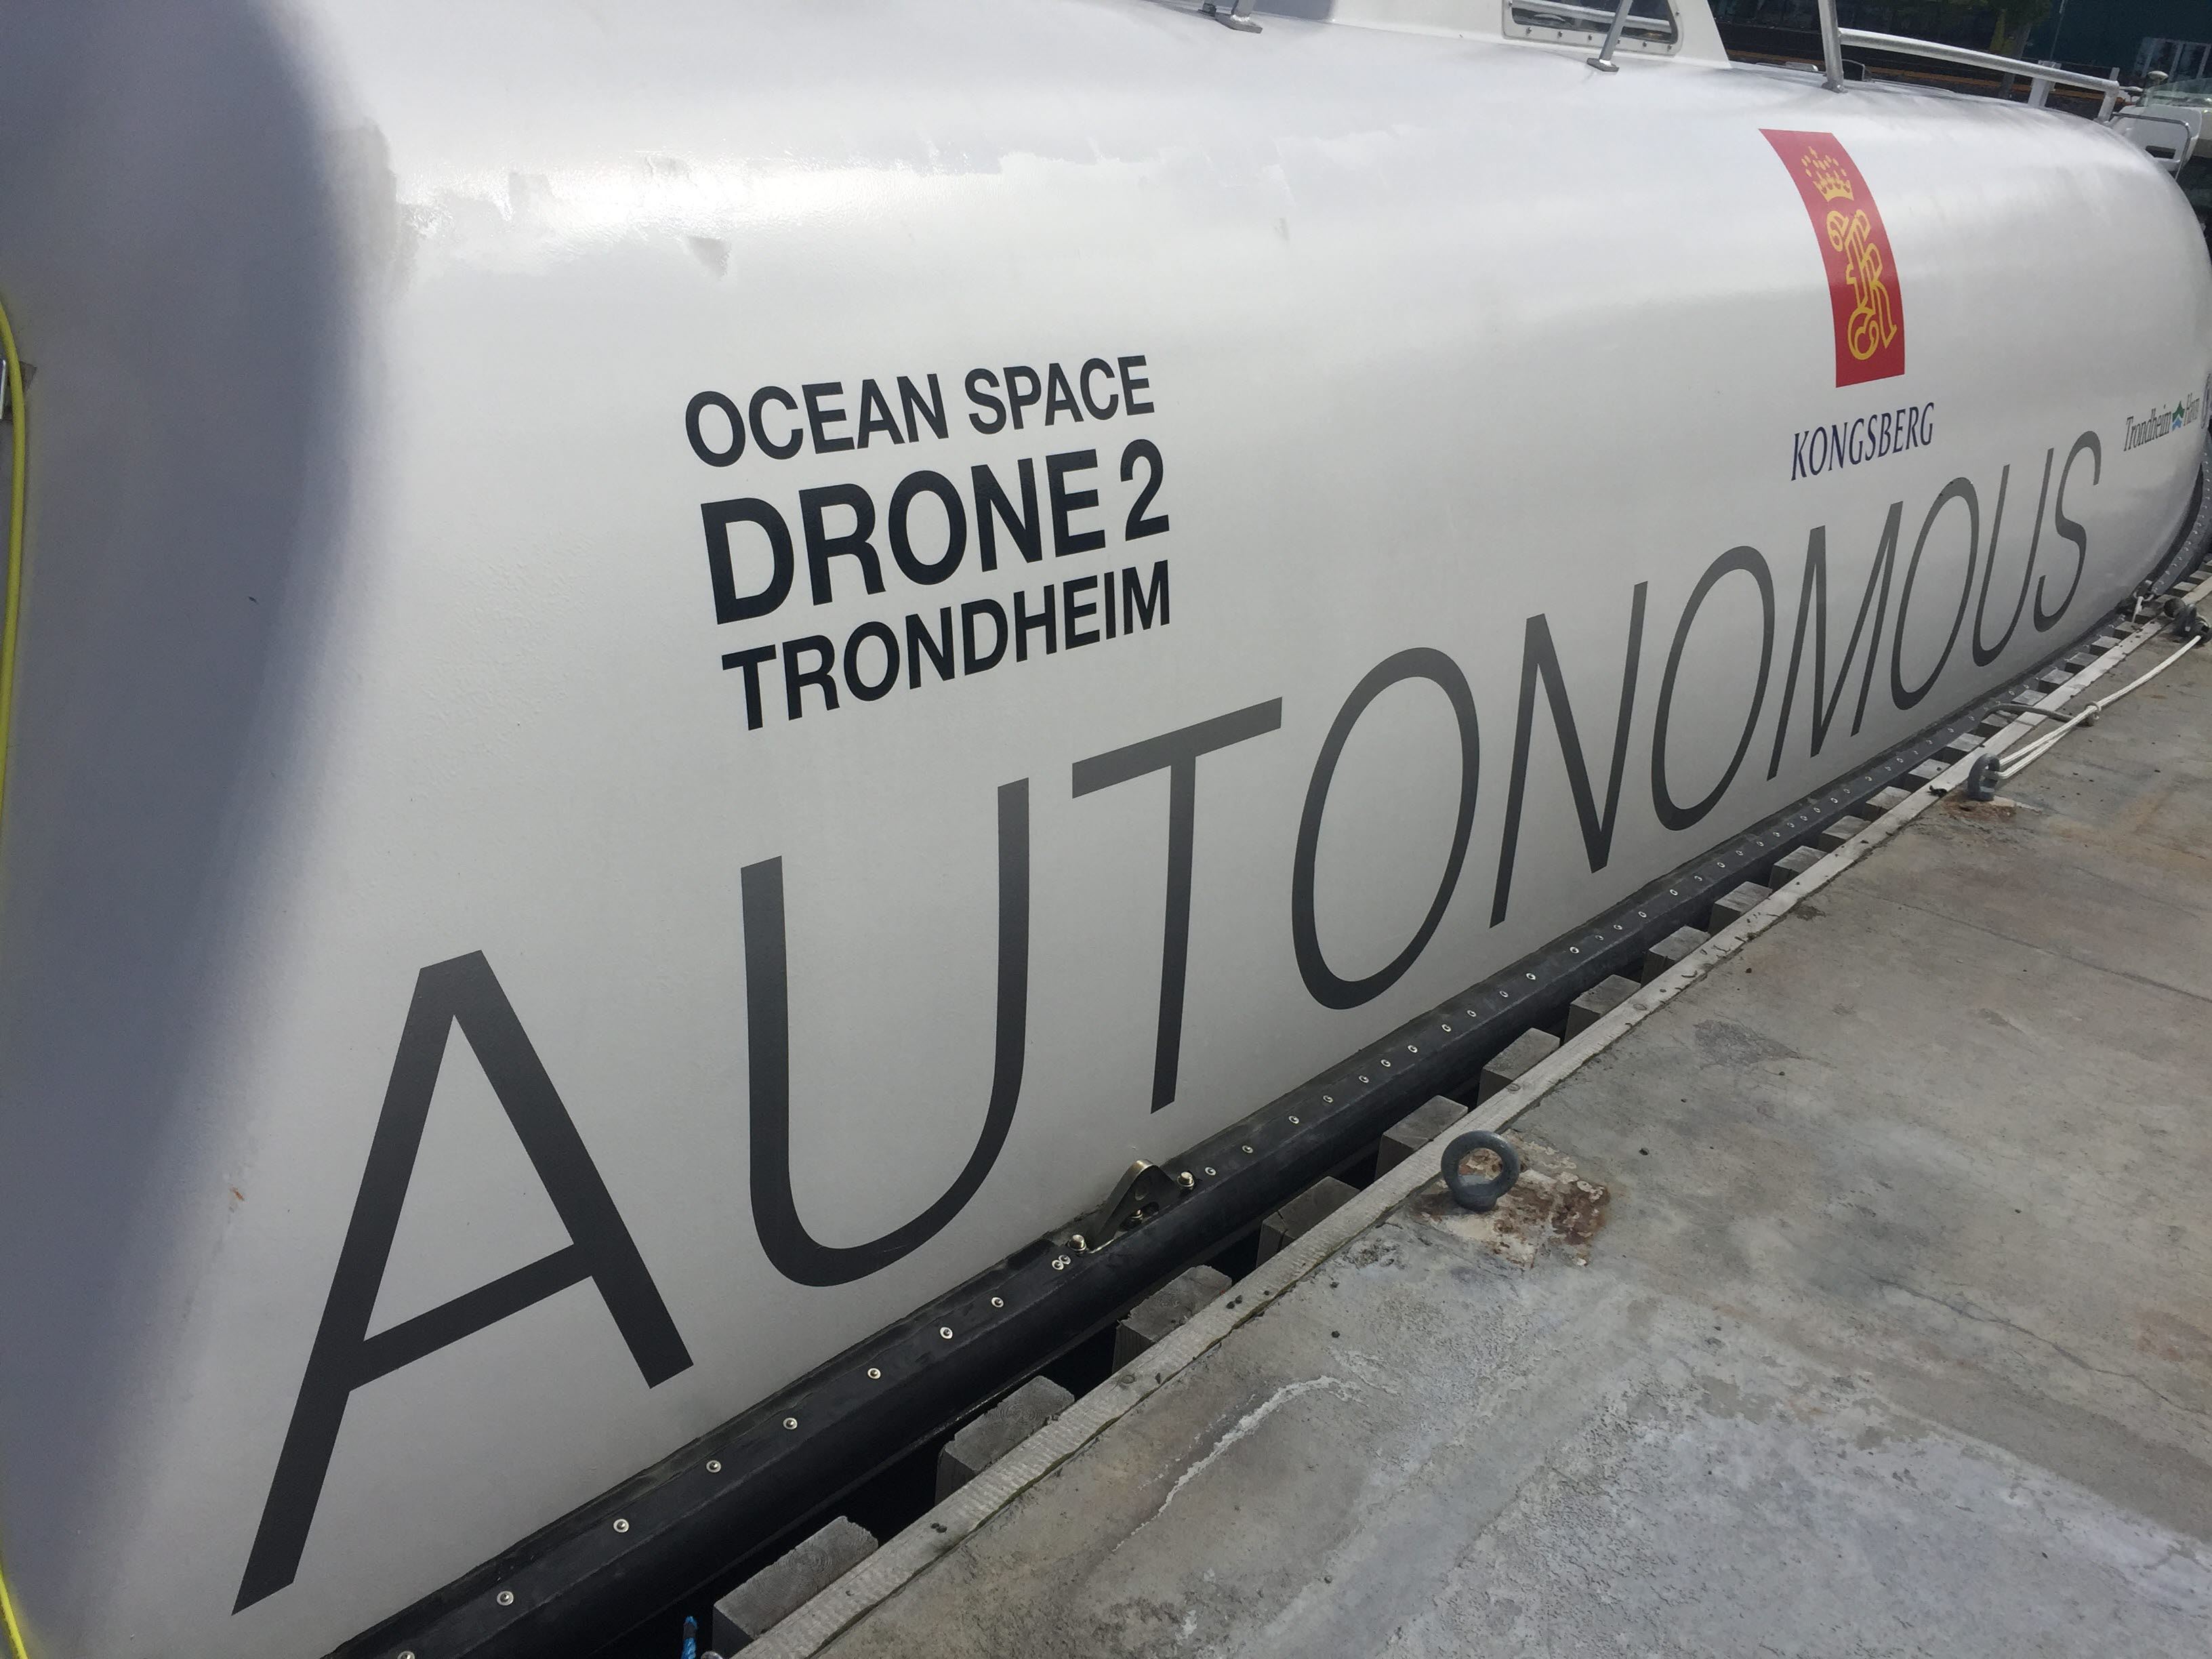 Autonomous Drone 2